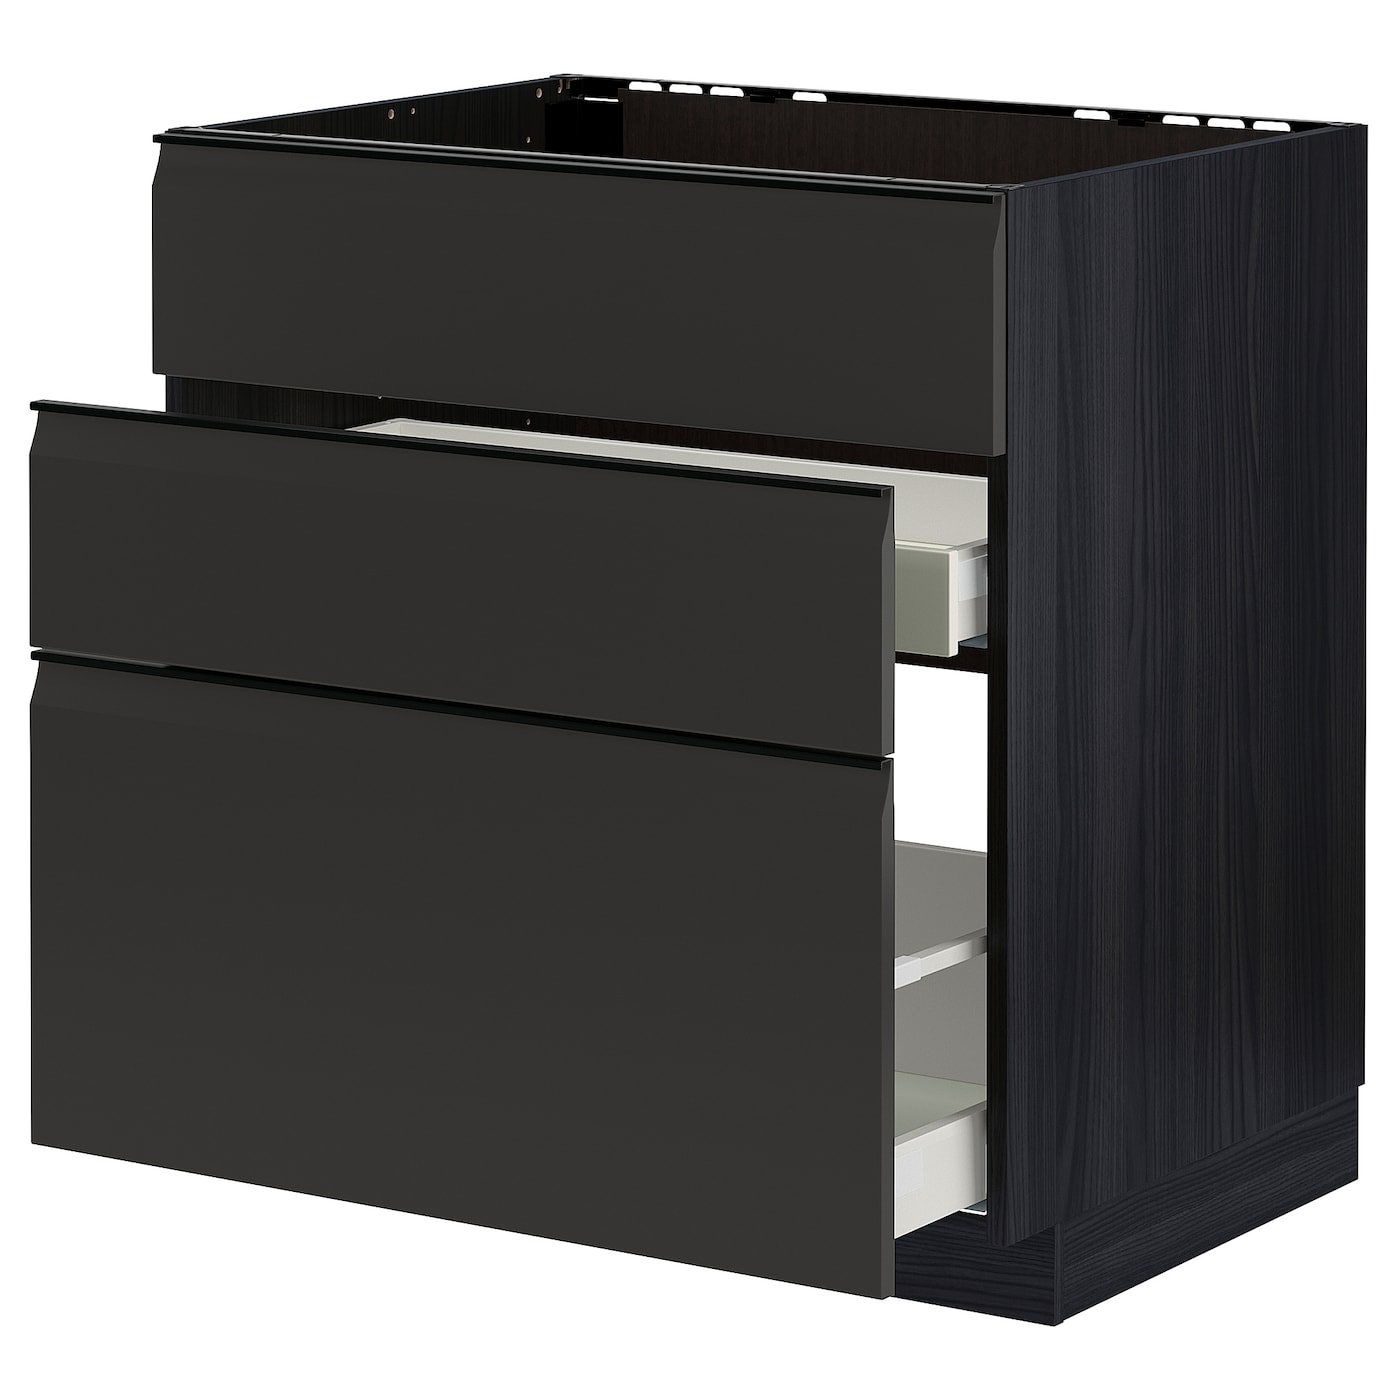 Напольный кухонный шкаф  - IKEA METOD MAXIMERA, 88x61,6x80см, черный, МЕТОД МАКСИМЕРА ИКЕА